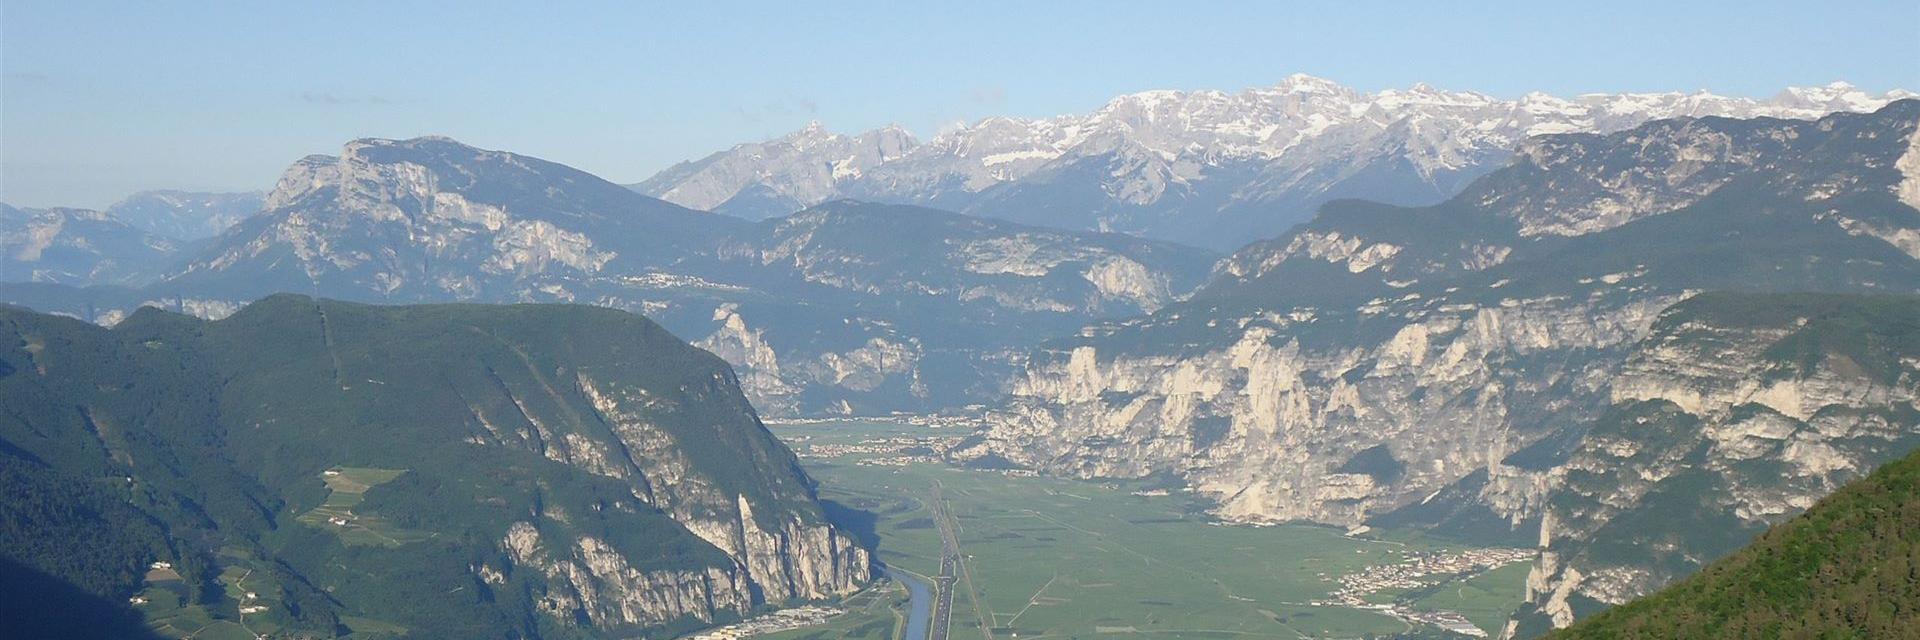 Bozen - Trient E5 Alpenüberquerung: Ausblick in das Etschtal